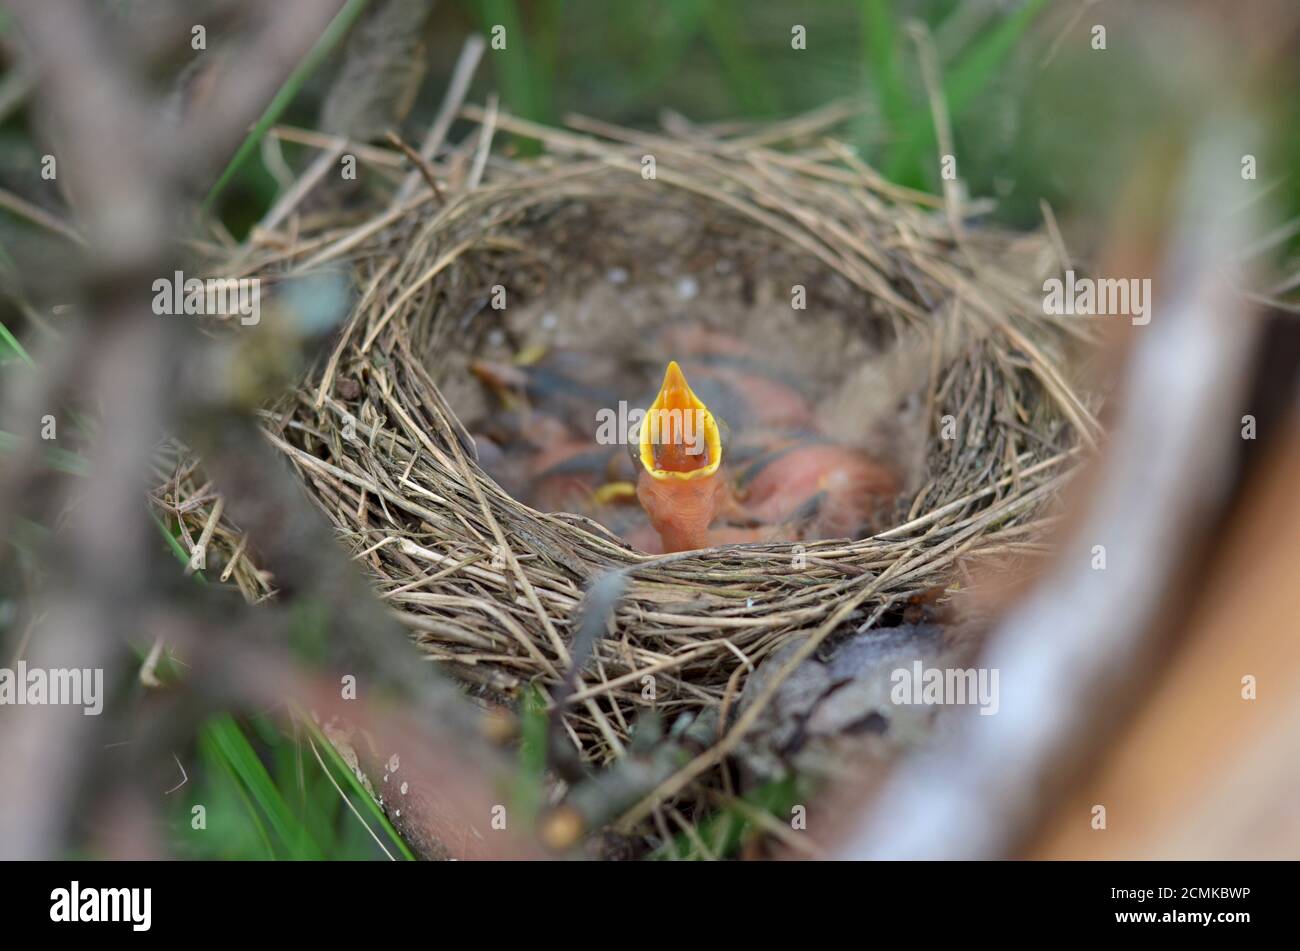 Piccolo uccello neonato nel nido di una Song Thrush (Turdus Philomelos) con aperto in attesa di essere nutrito. Profondità di campo poco profonda, primo piano. Foto Stock